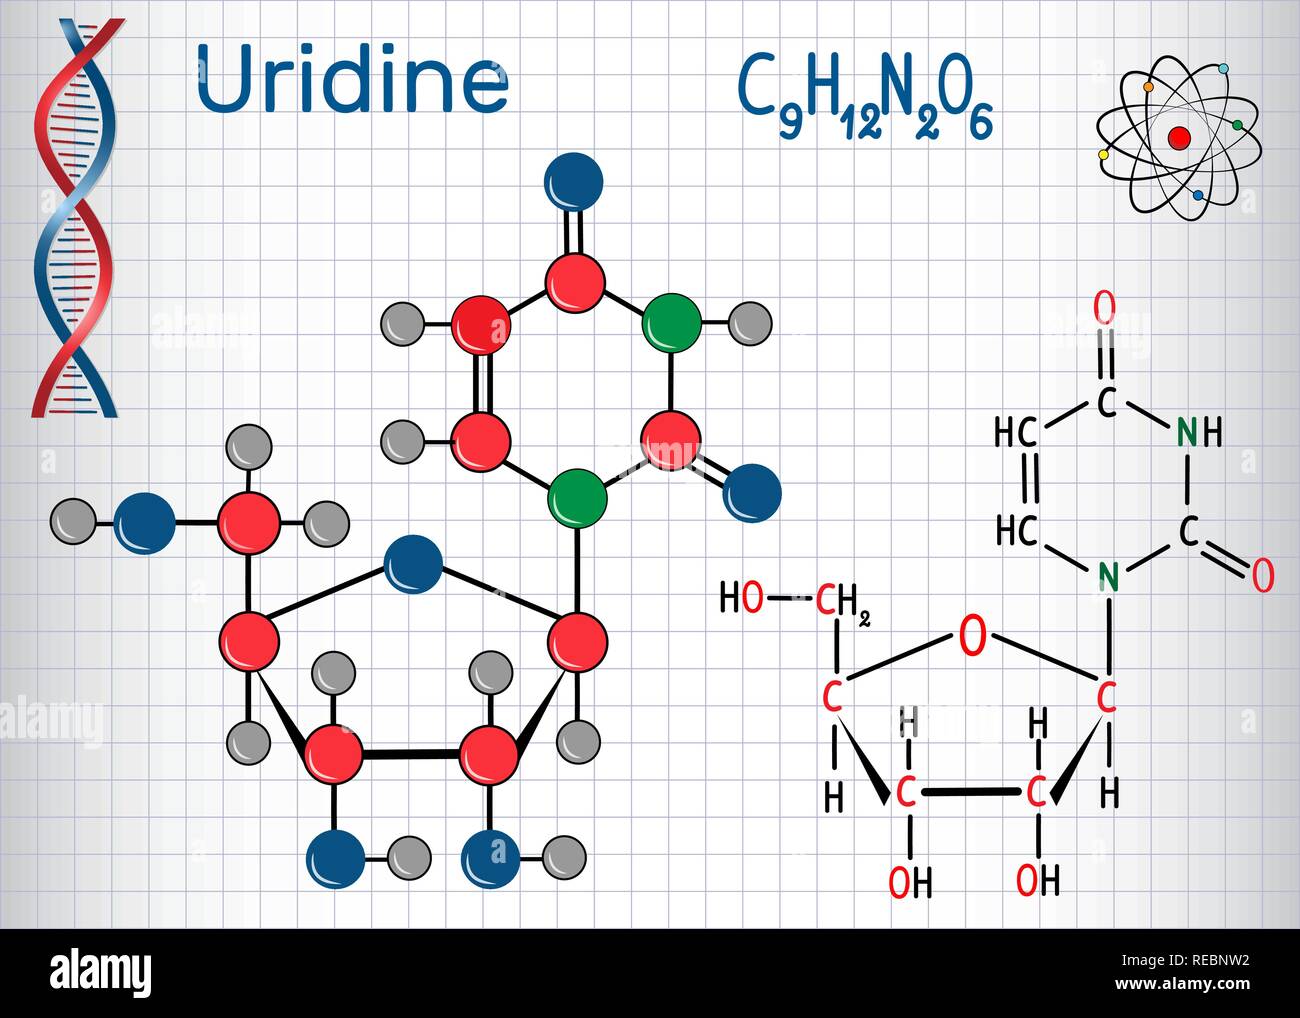 L'uridine - molécule nucléosidiques de la pyrimidine, sont des éléments importants de l'ARN. Formule chimique structurale et molécule modèle. Feuille de papier dans une cage.Vector il Illustration de Vecteur